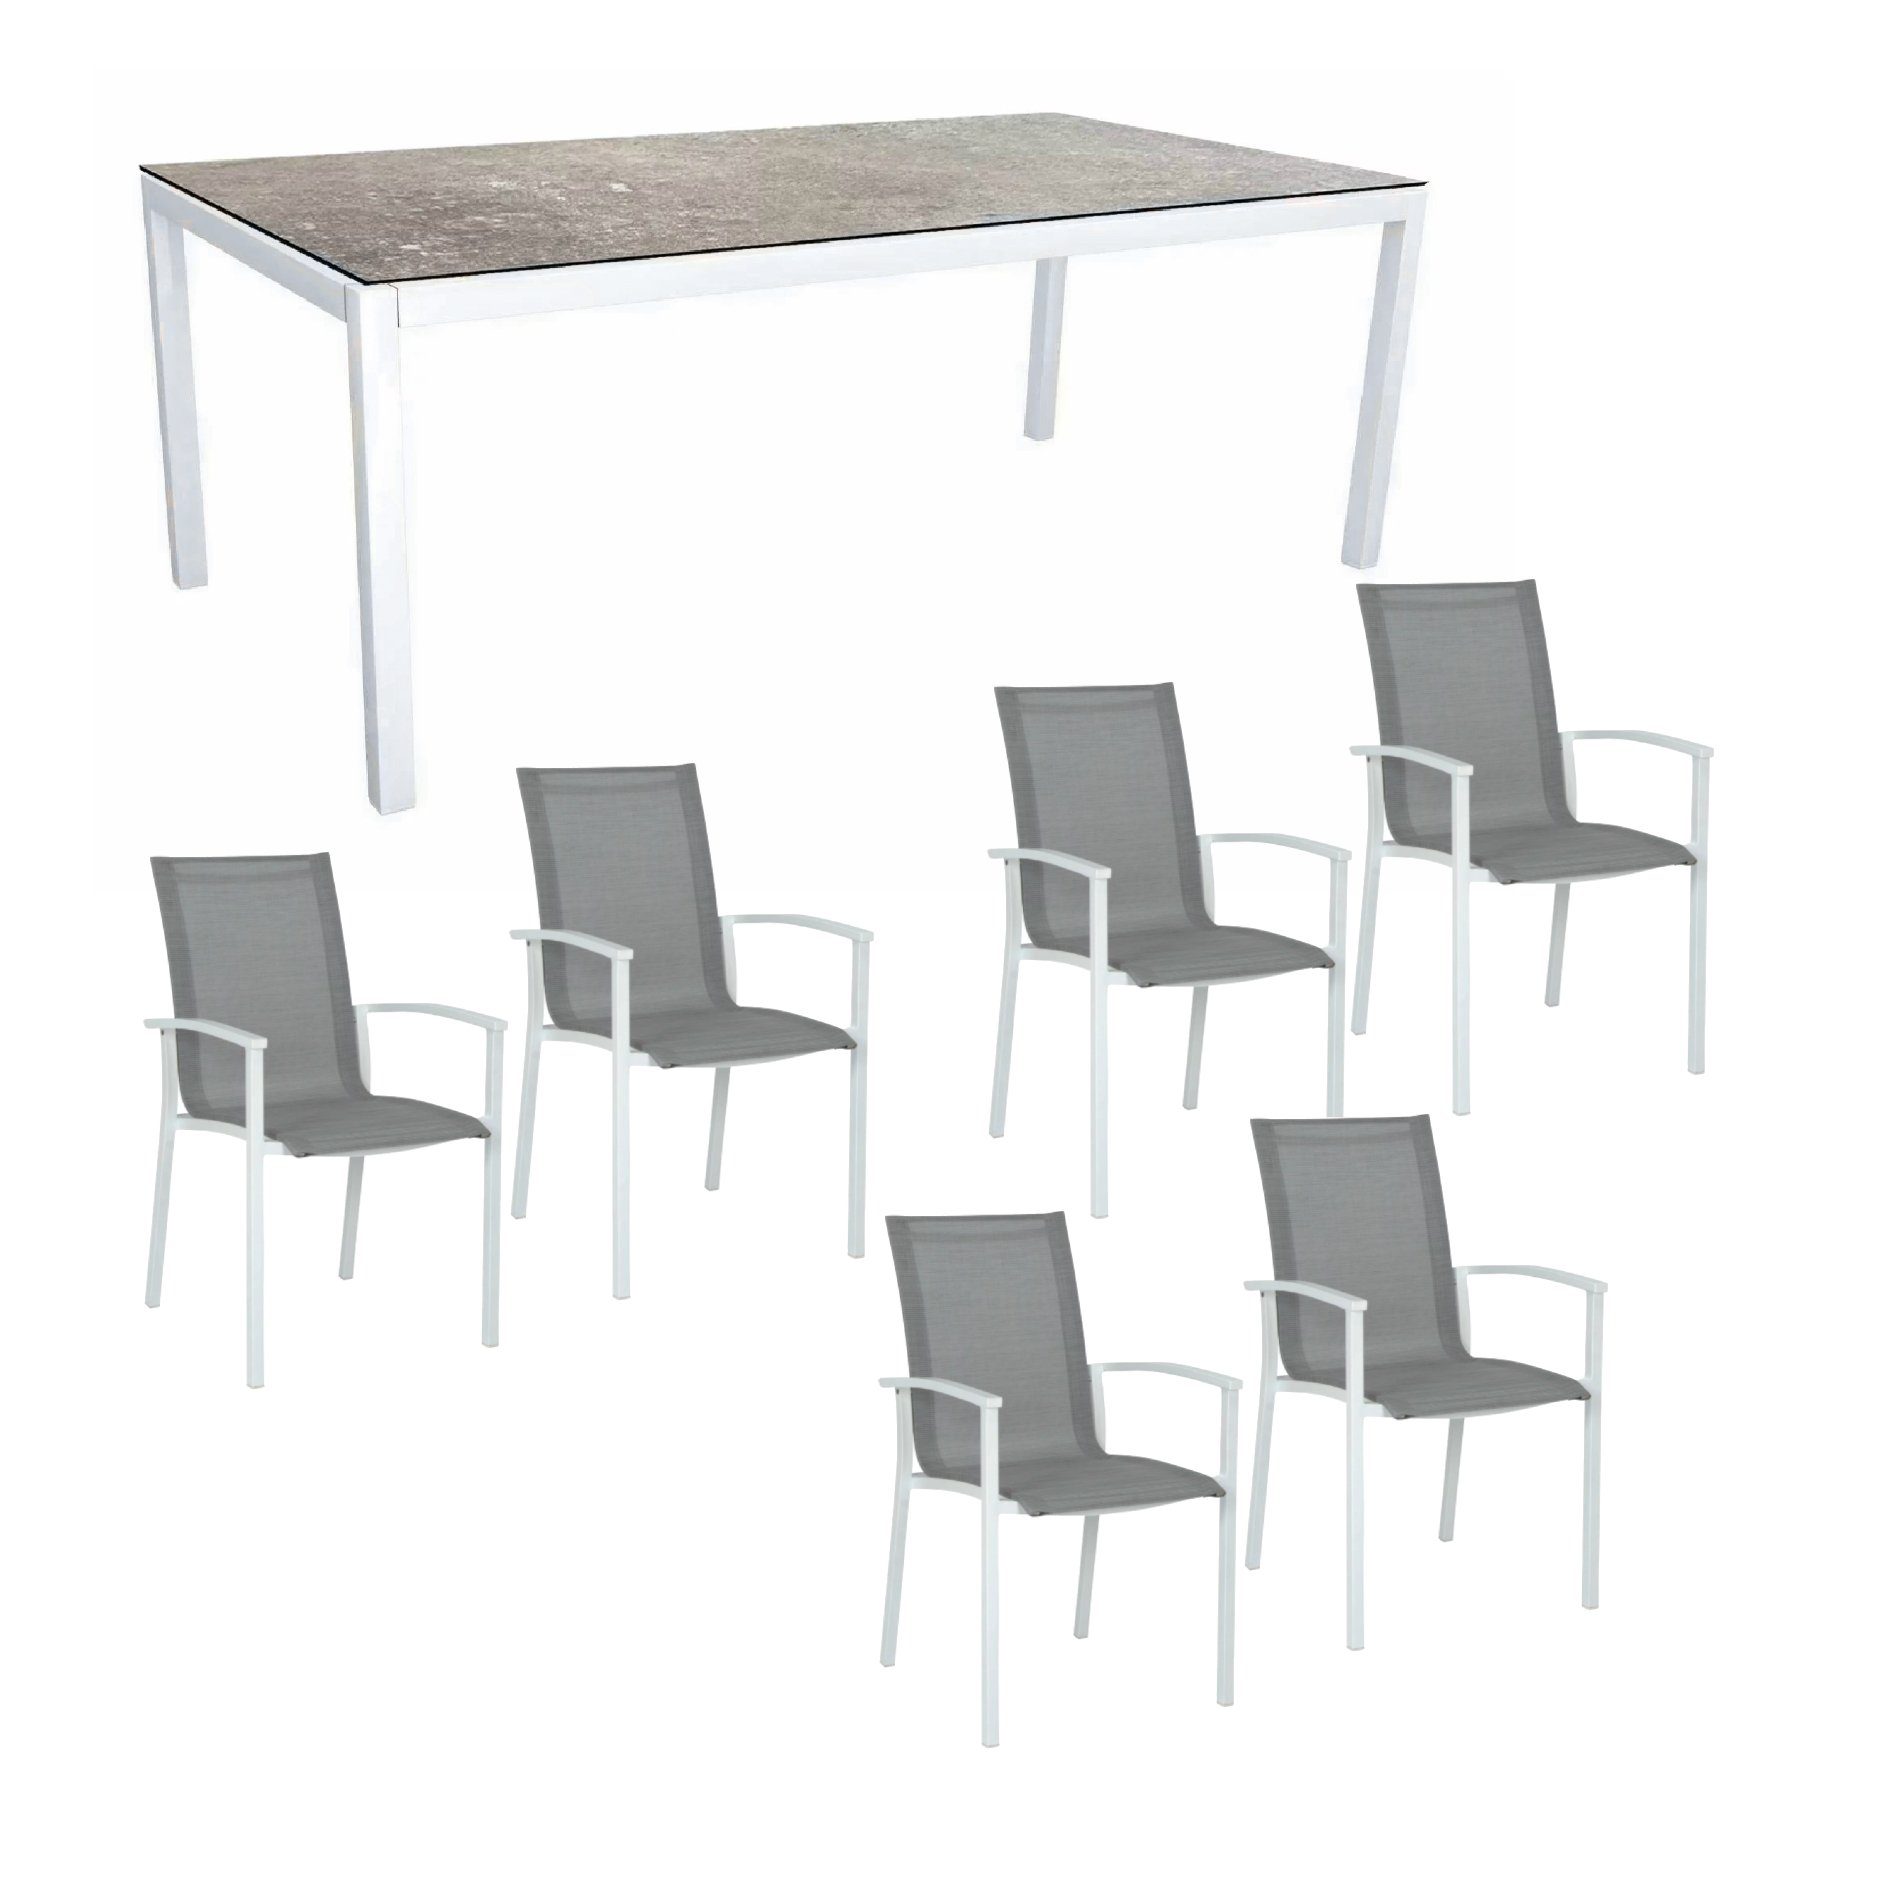 Stern Gartenmöbel-Set "Evoee", Gestelle Aluminium weiß, Tischplatte HPL Vintage Stone, Sitz- und Rückenfläche Textilgewebe silberfarben